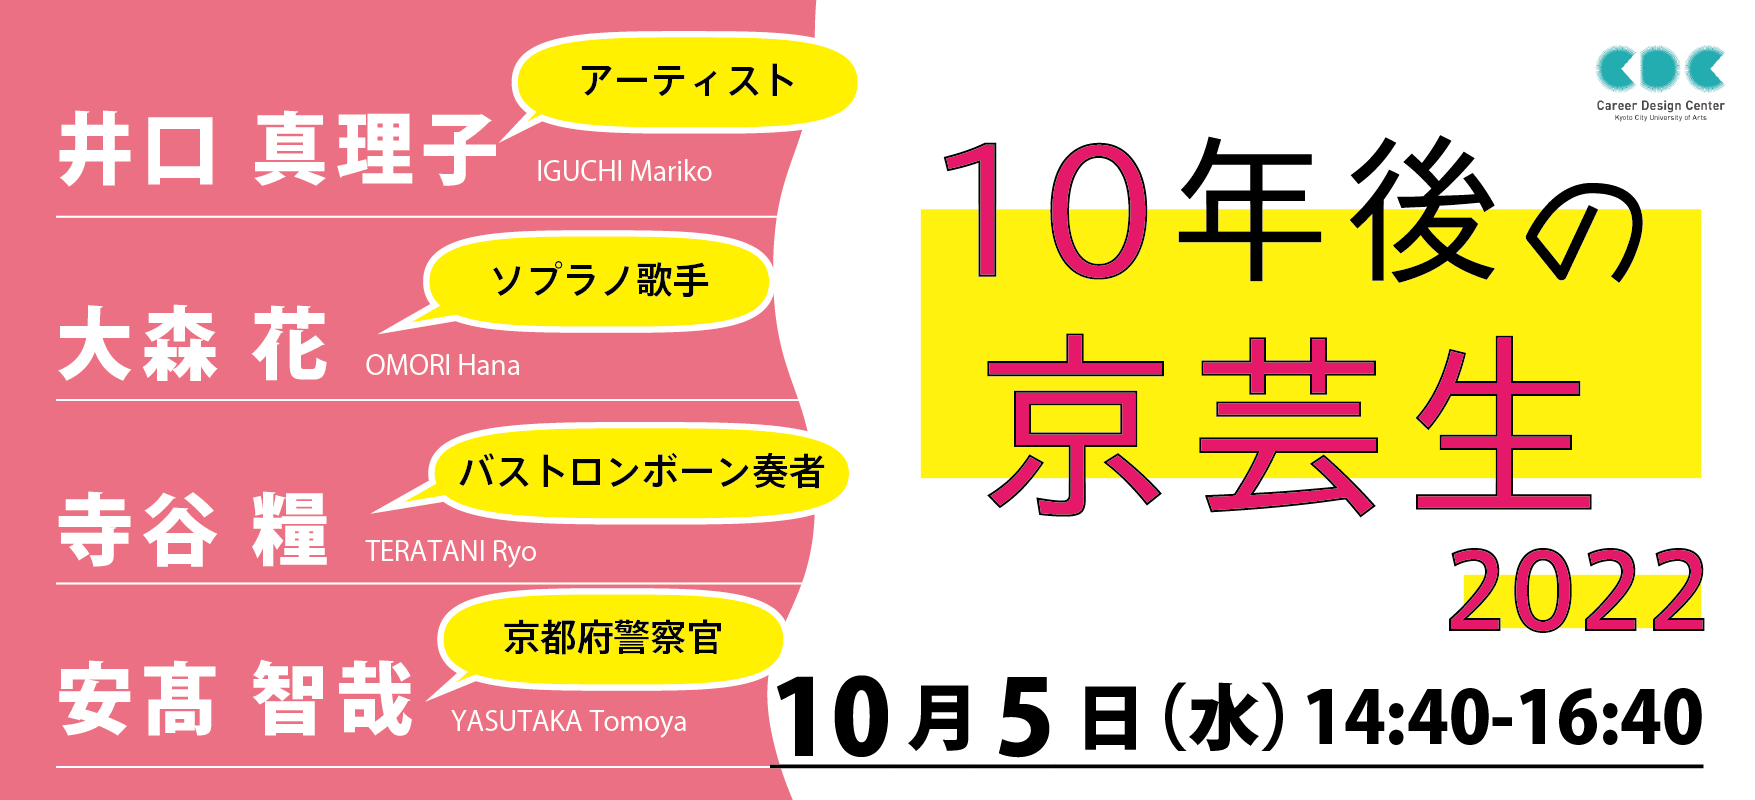 レクチャーシリーズ「10年後の京芸生」2022